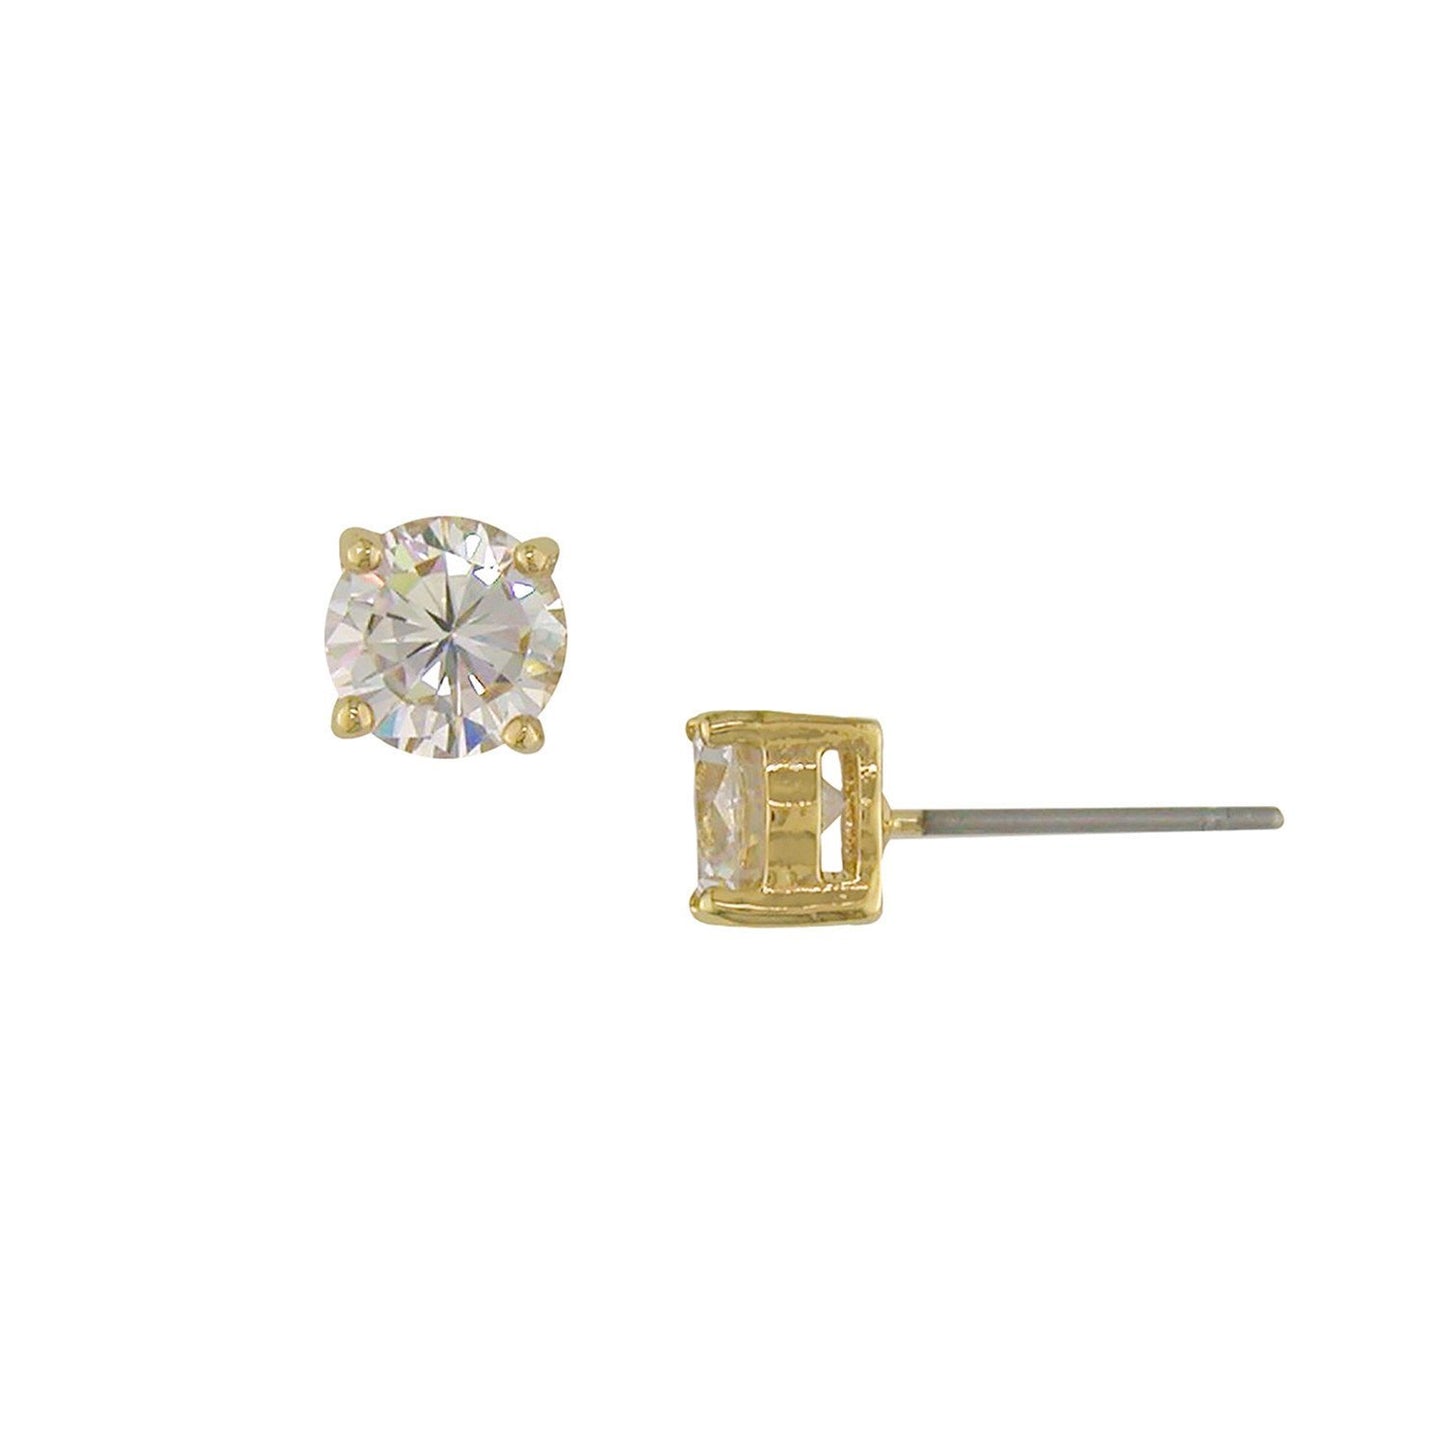 Jasmine 1 Ct. Round CZ Diamond Stud Earrings, Gold - Zahra Jewelry